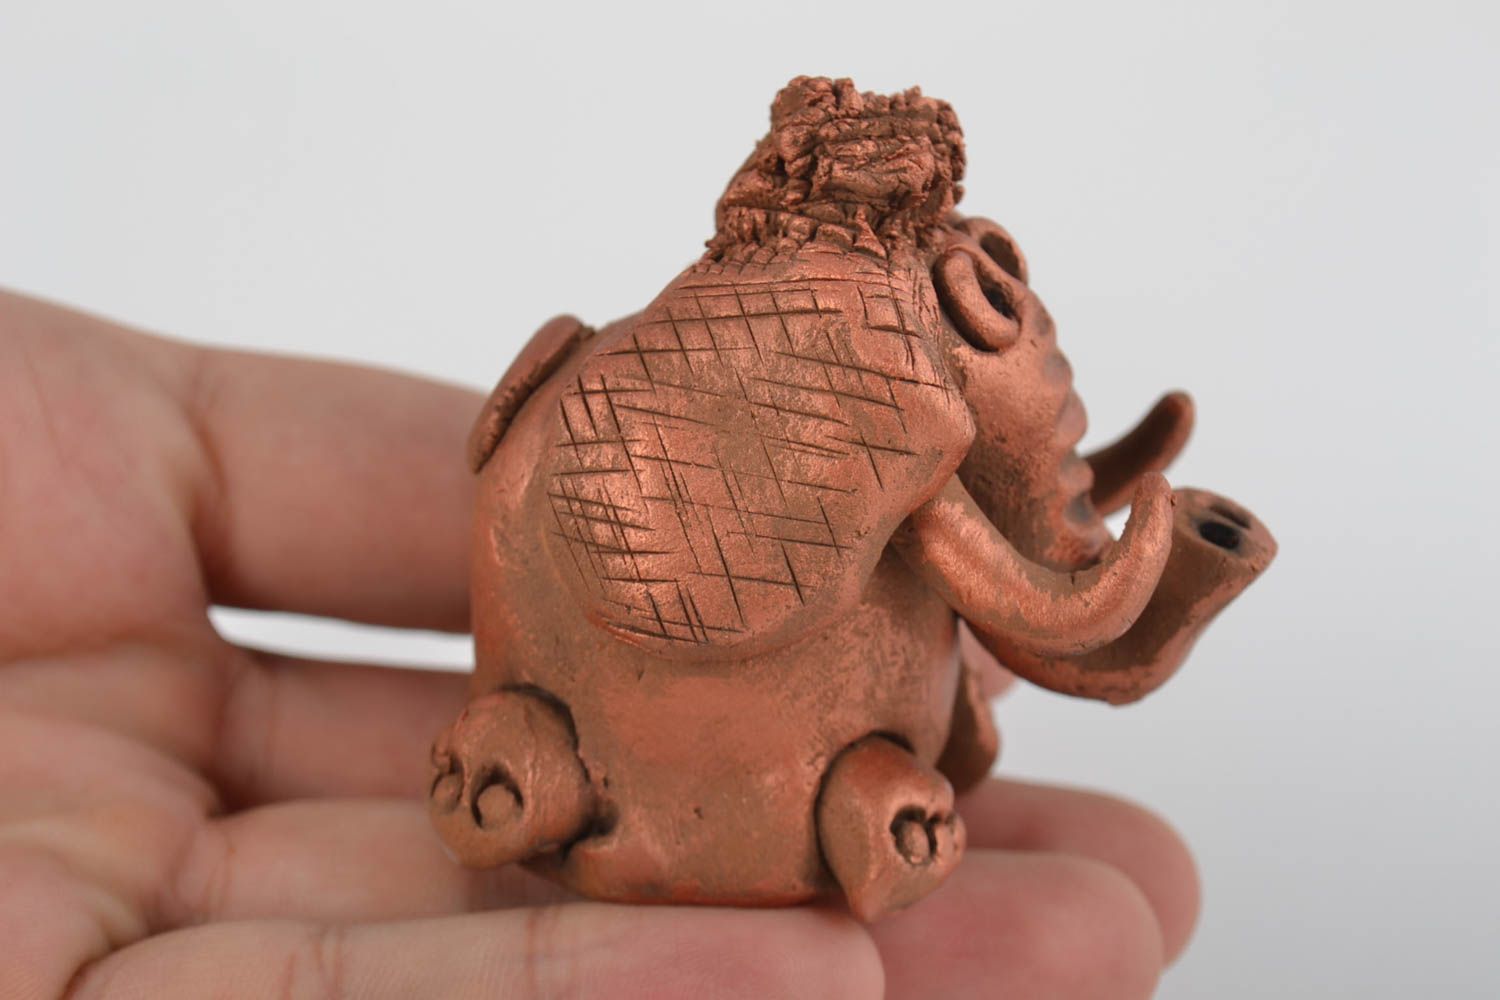 Kleine Keramik Statuette Elefant handmade dekorativ mit Acrylfarben bemalt schön foto 2